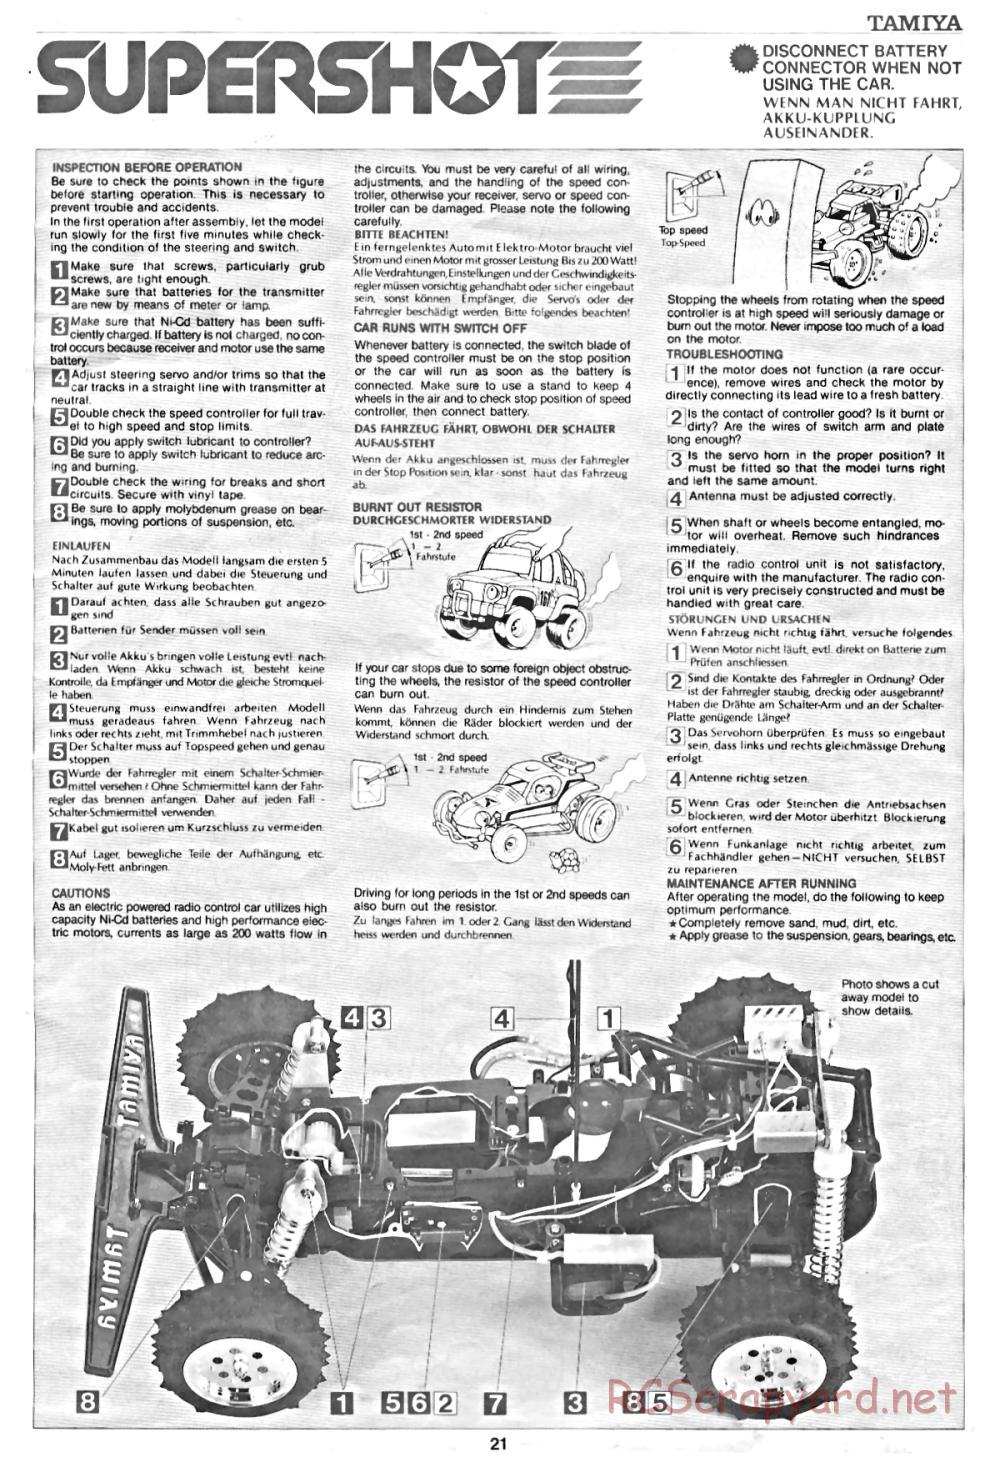 Tamiya - Supershot - 58054 - Manual - Page 21